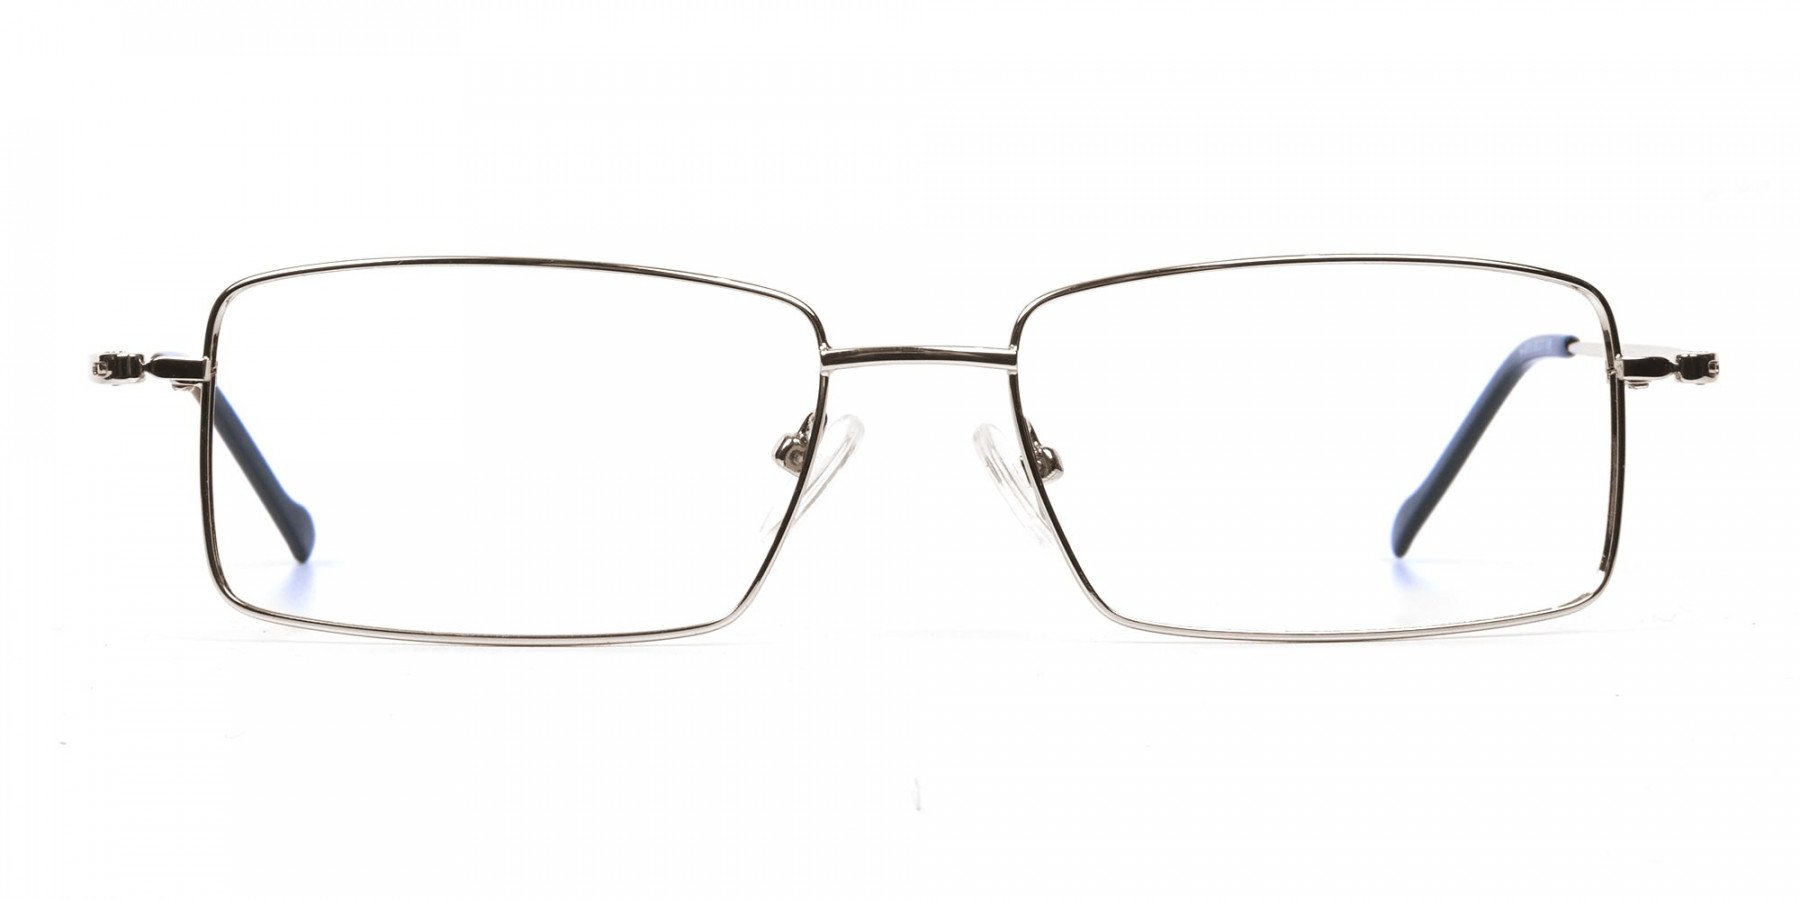 Titanium Glasses in Silver, Eyeglasses - 1